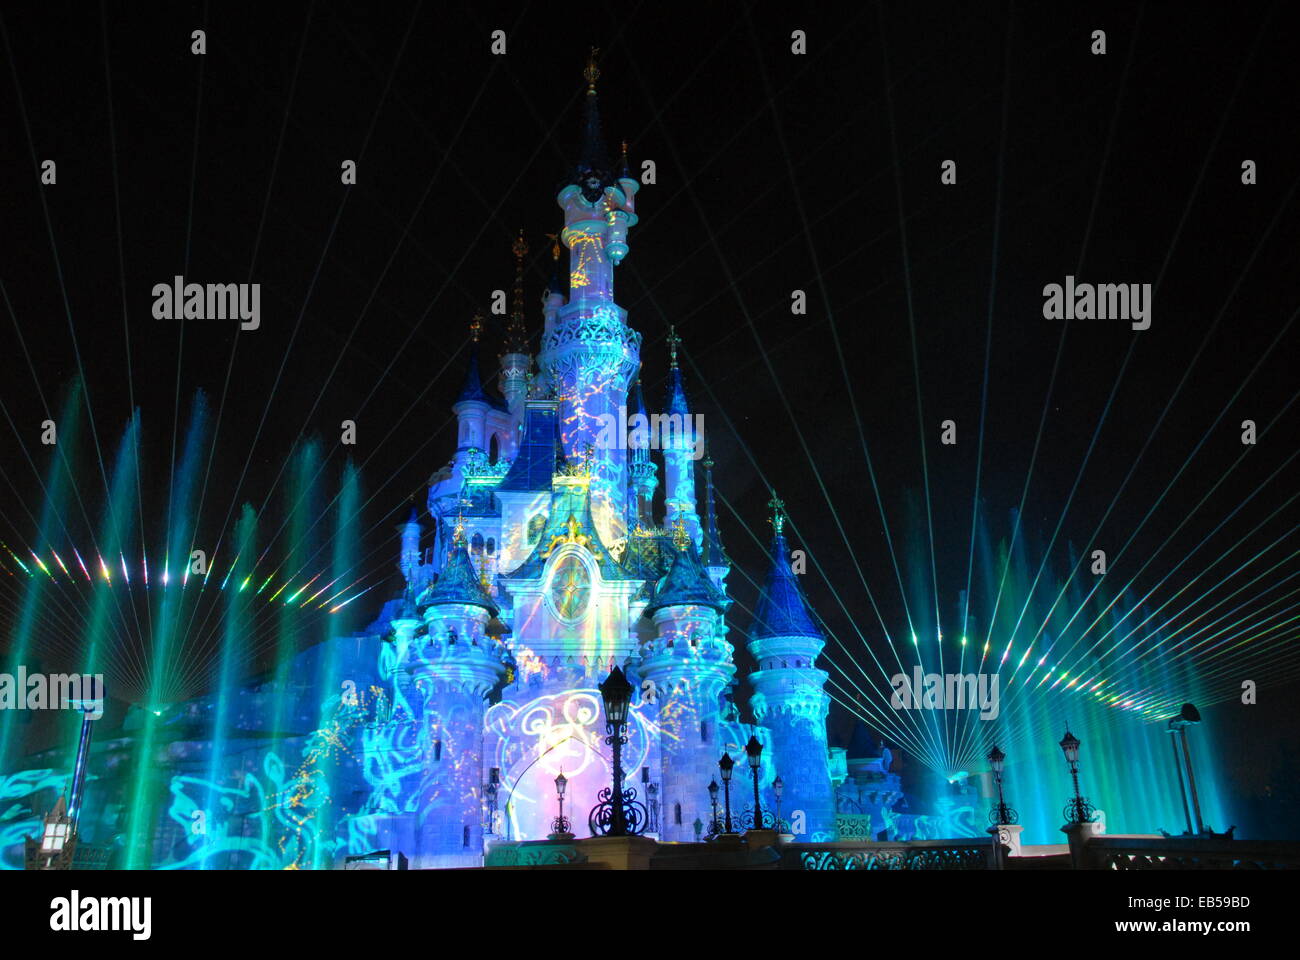 Disney Dreams 20 Year Celebration - Disneyland Paris Noviembre 2013/14 show de luces y fuegos artificiales del Castillo de la Bella Durmiente Foto de stock